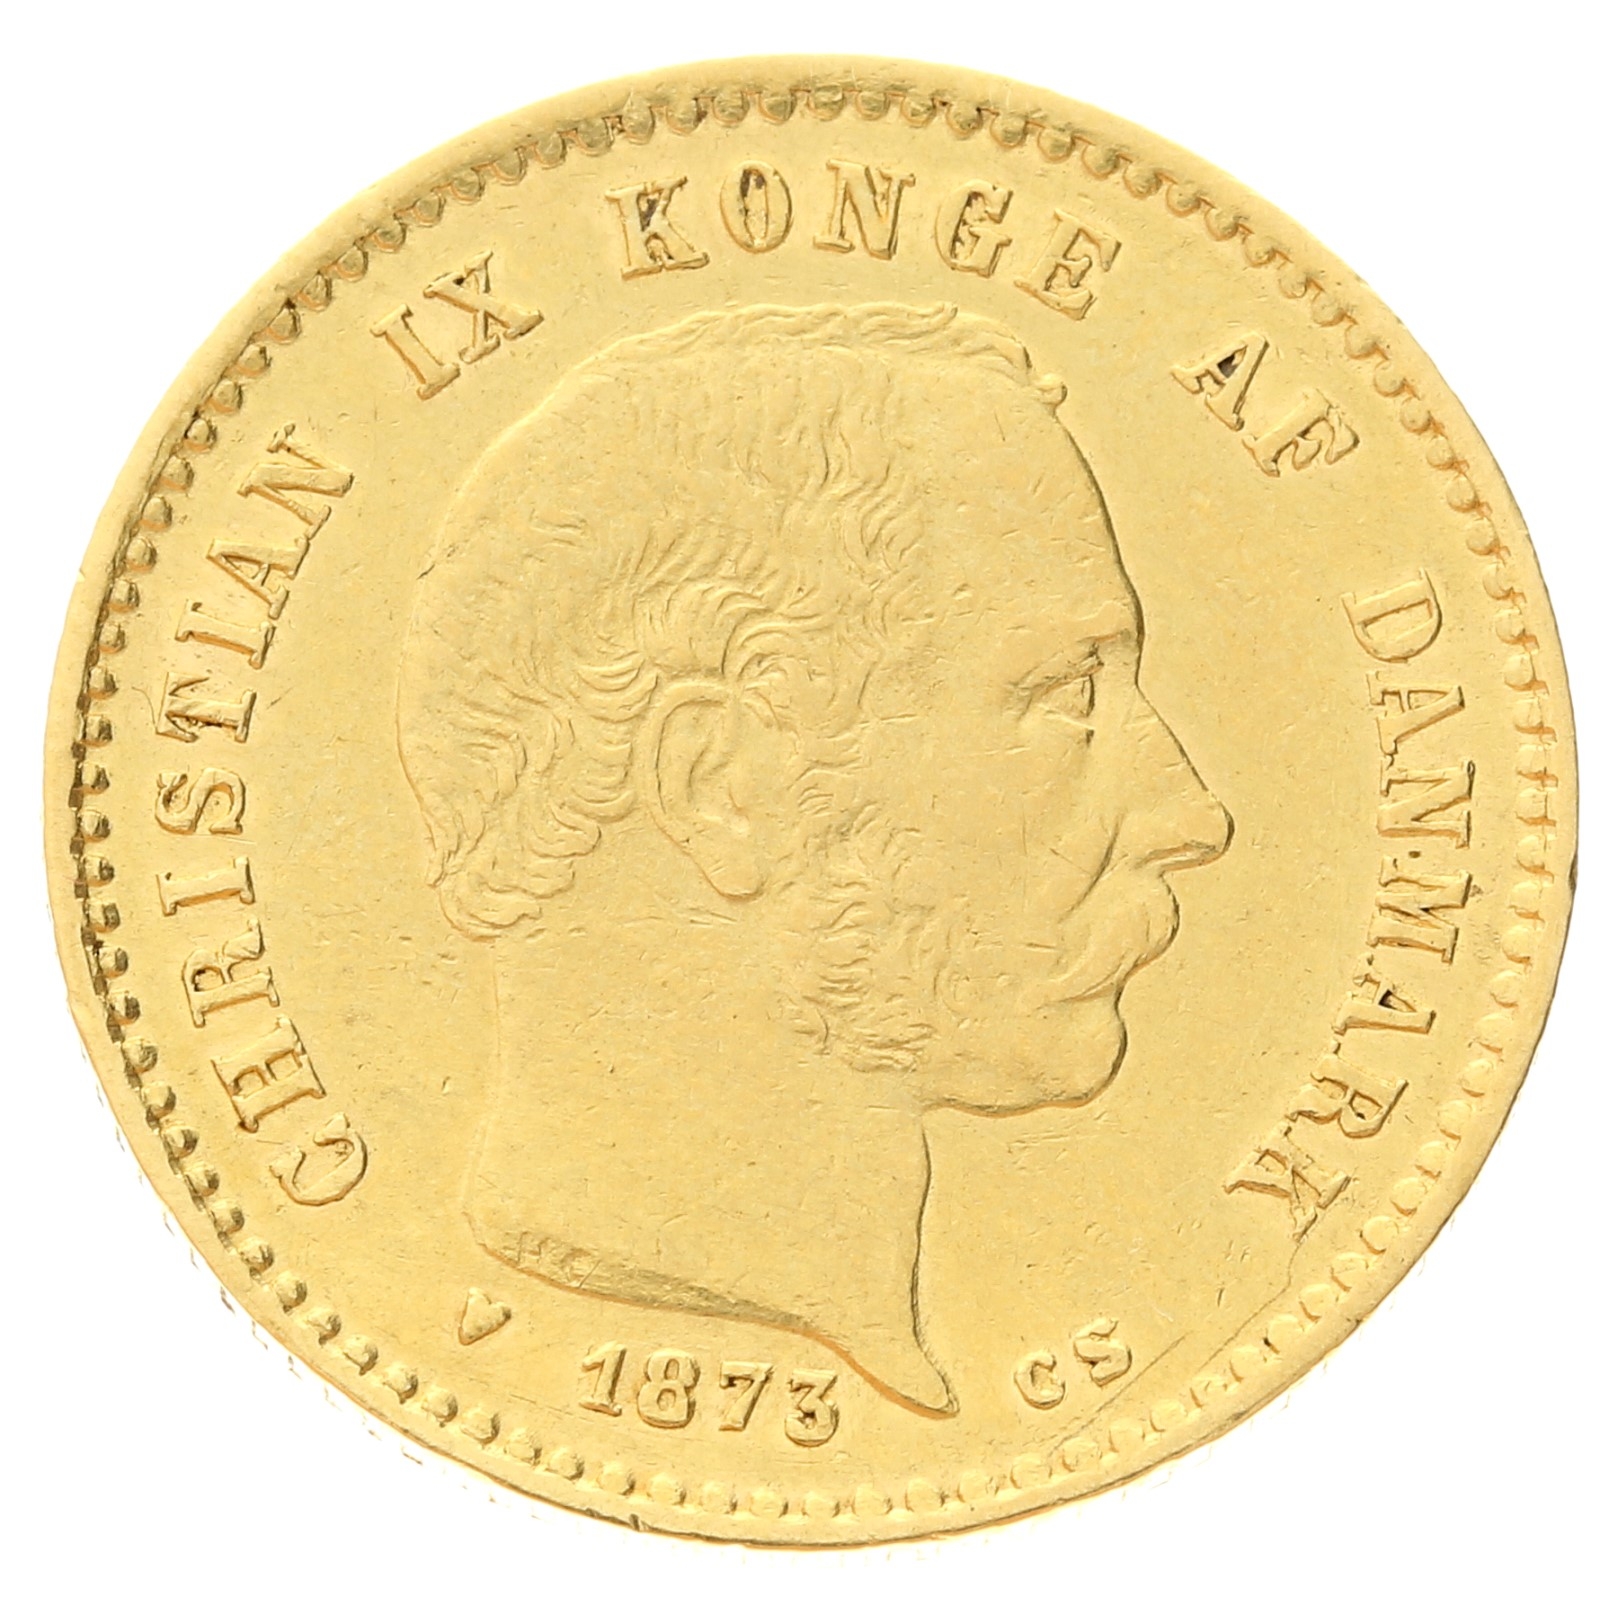 Denmark - 10 kroner - 1873 - Christian IX 